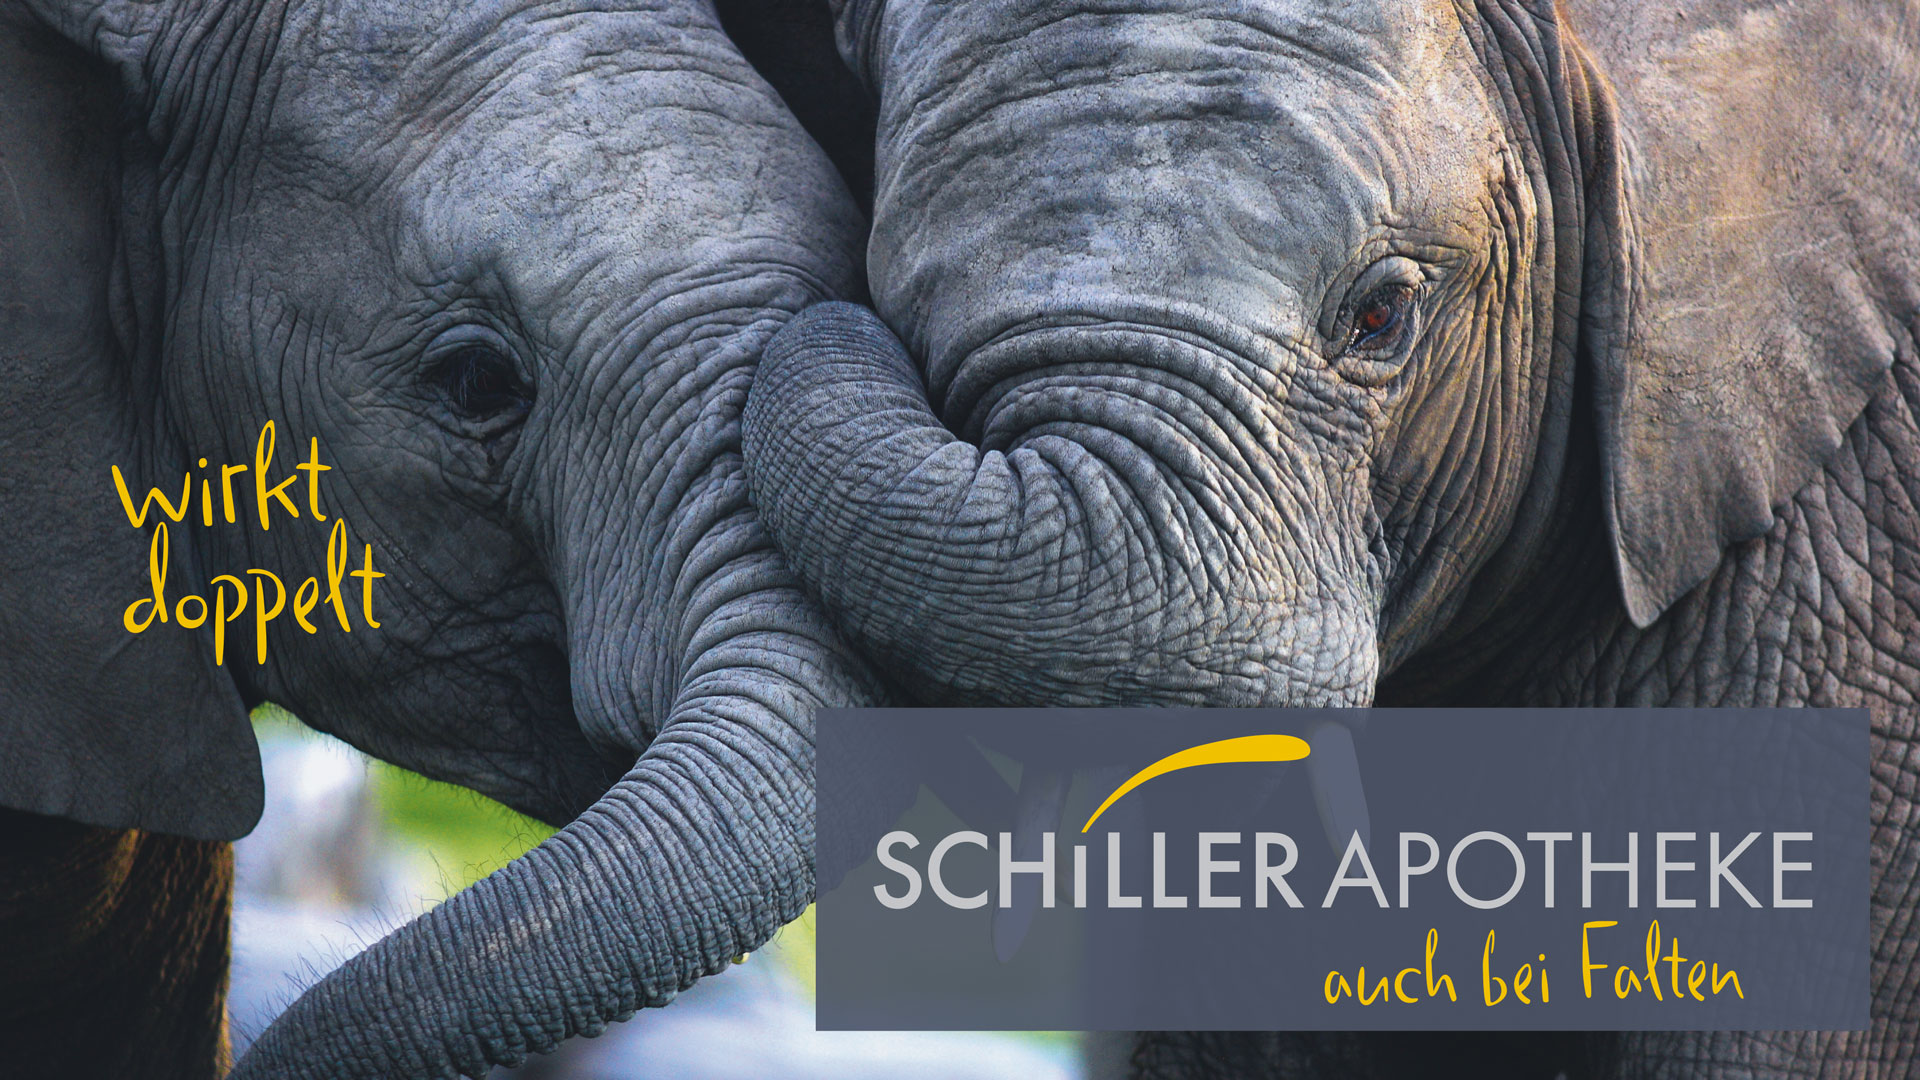 Zwei Elefanten nebeneinander mit dem Logo Schiller Apotheke wirkt doppelt auch bei Falten